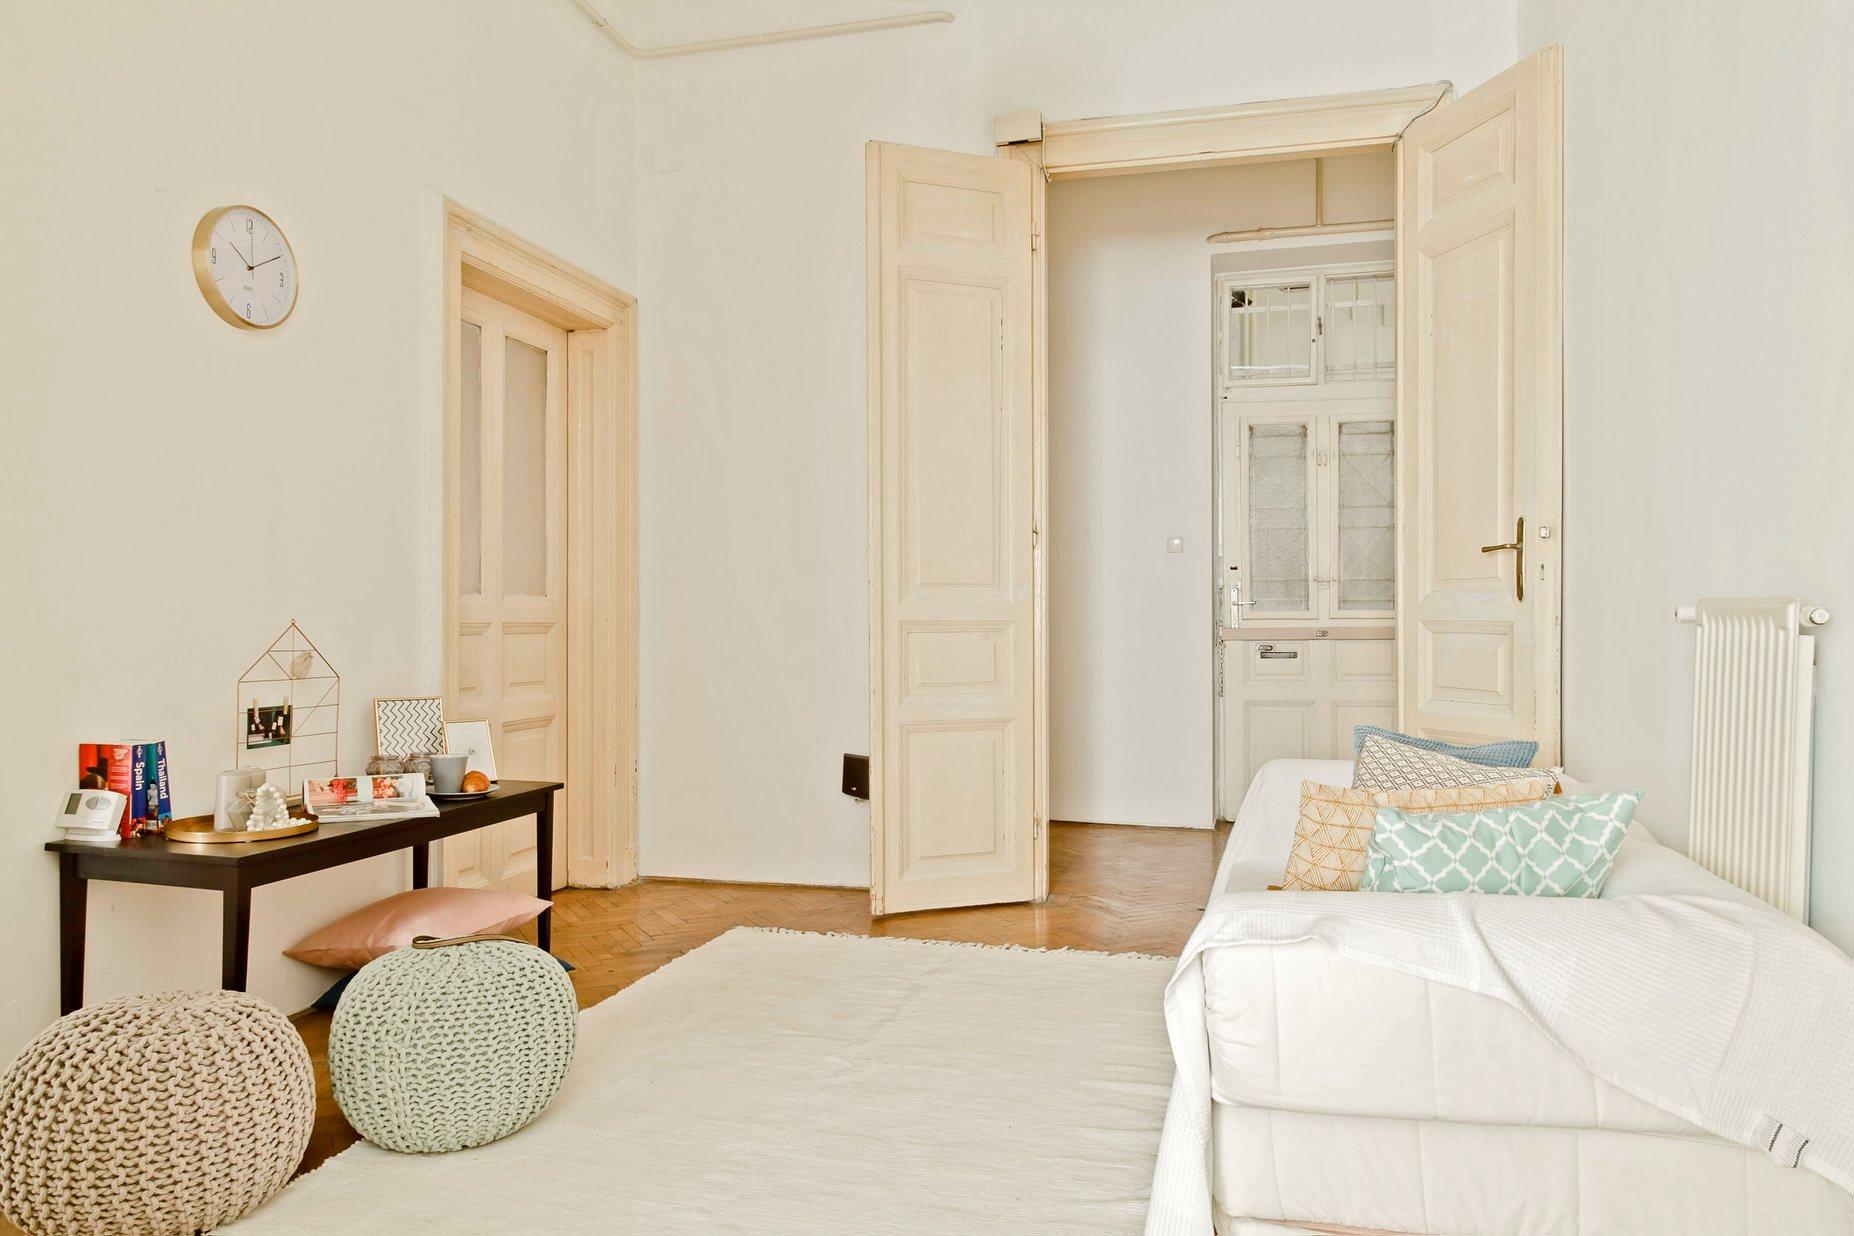 Rakoczi 3 - Private room in a flat in Budapest